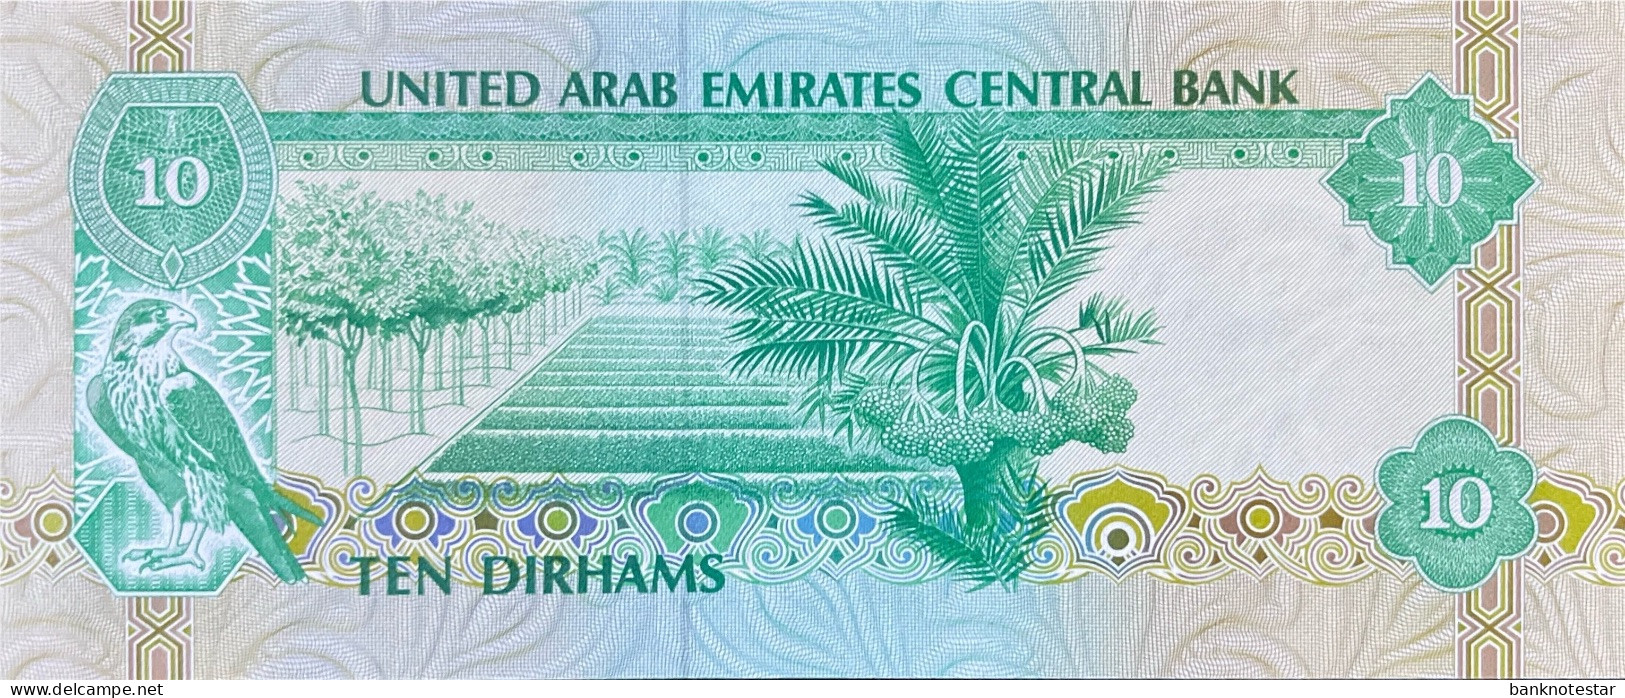 United Arab Emirates 10 Dirhams, P-8 (1982) - UNC - United Arab Emirates